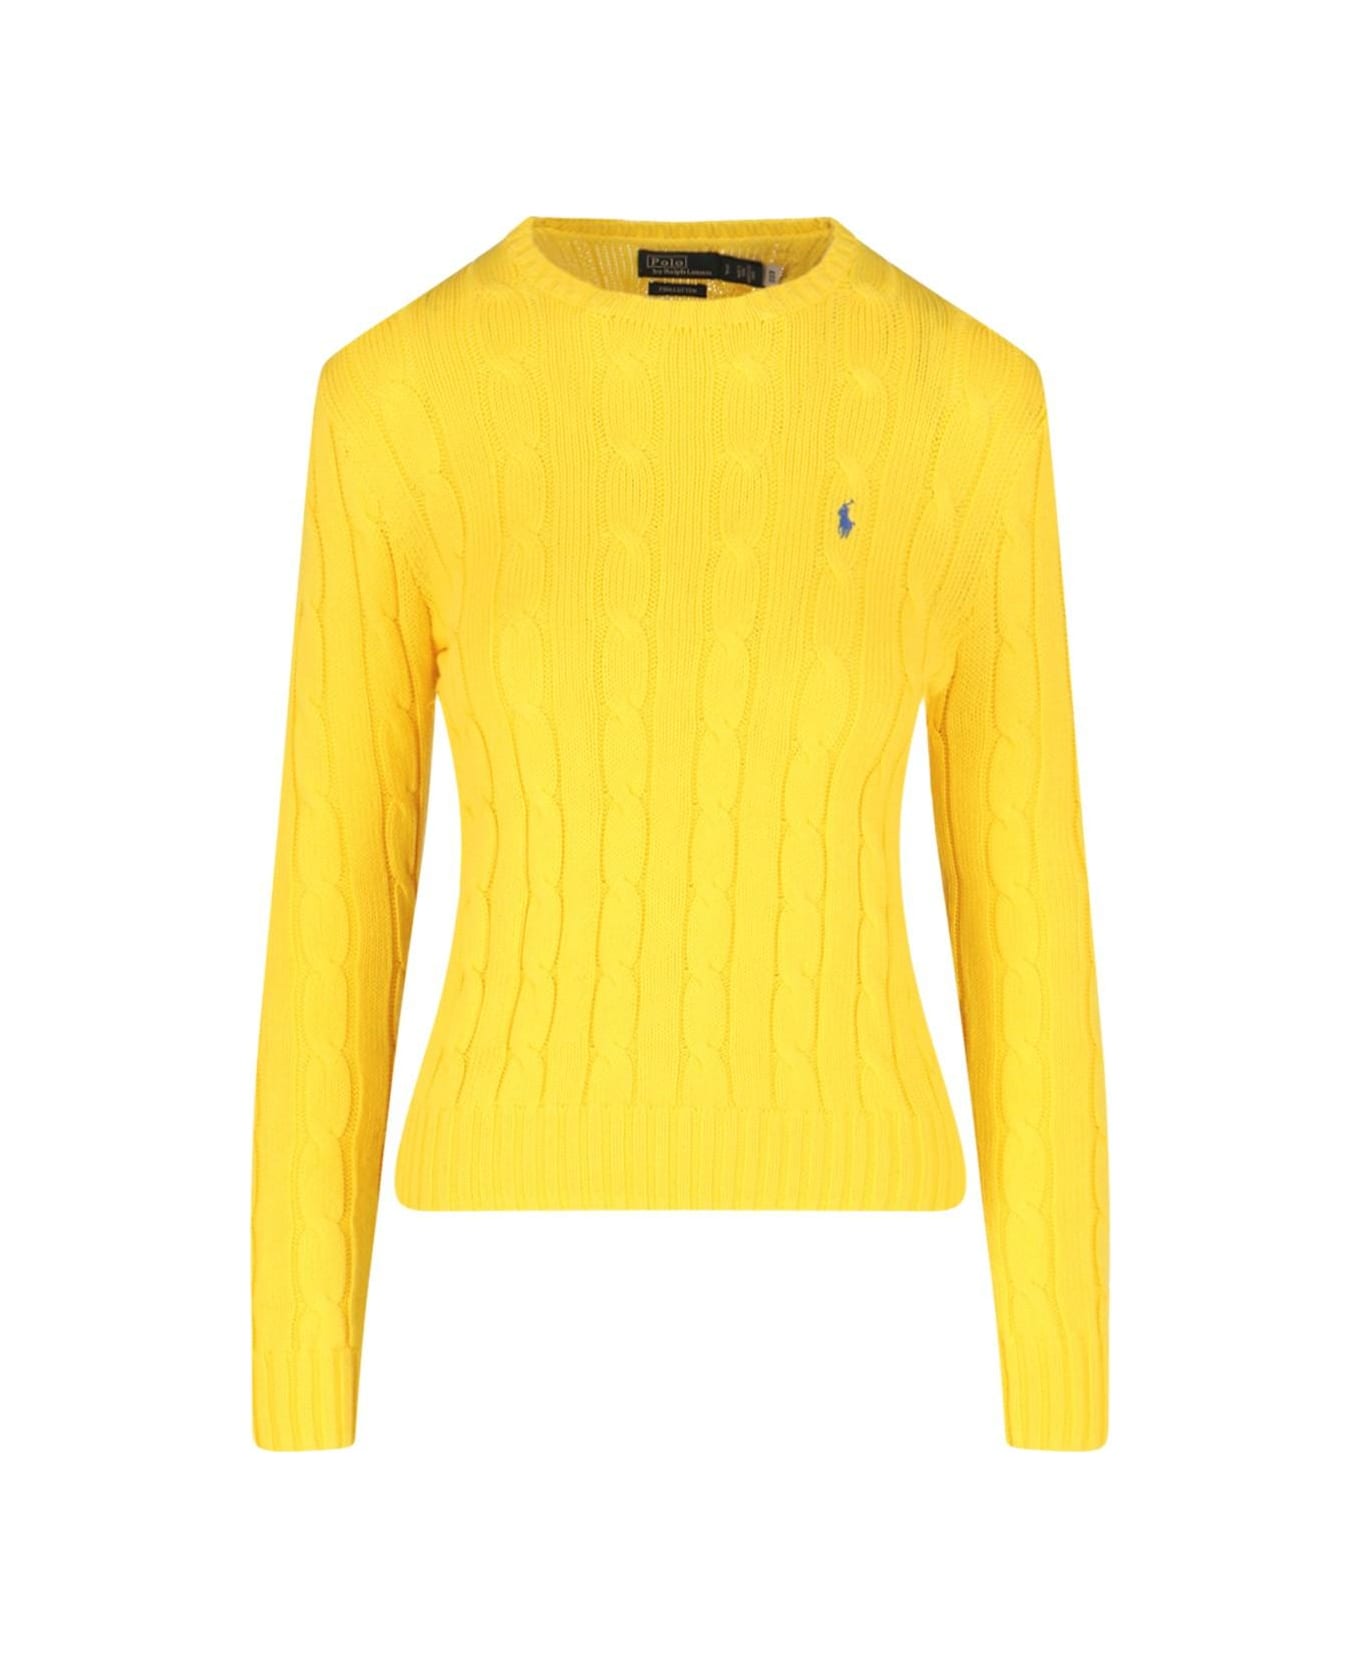 Ralph Lauren Logo Crew Neck Sweater - Trainer Yellow